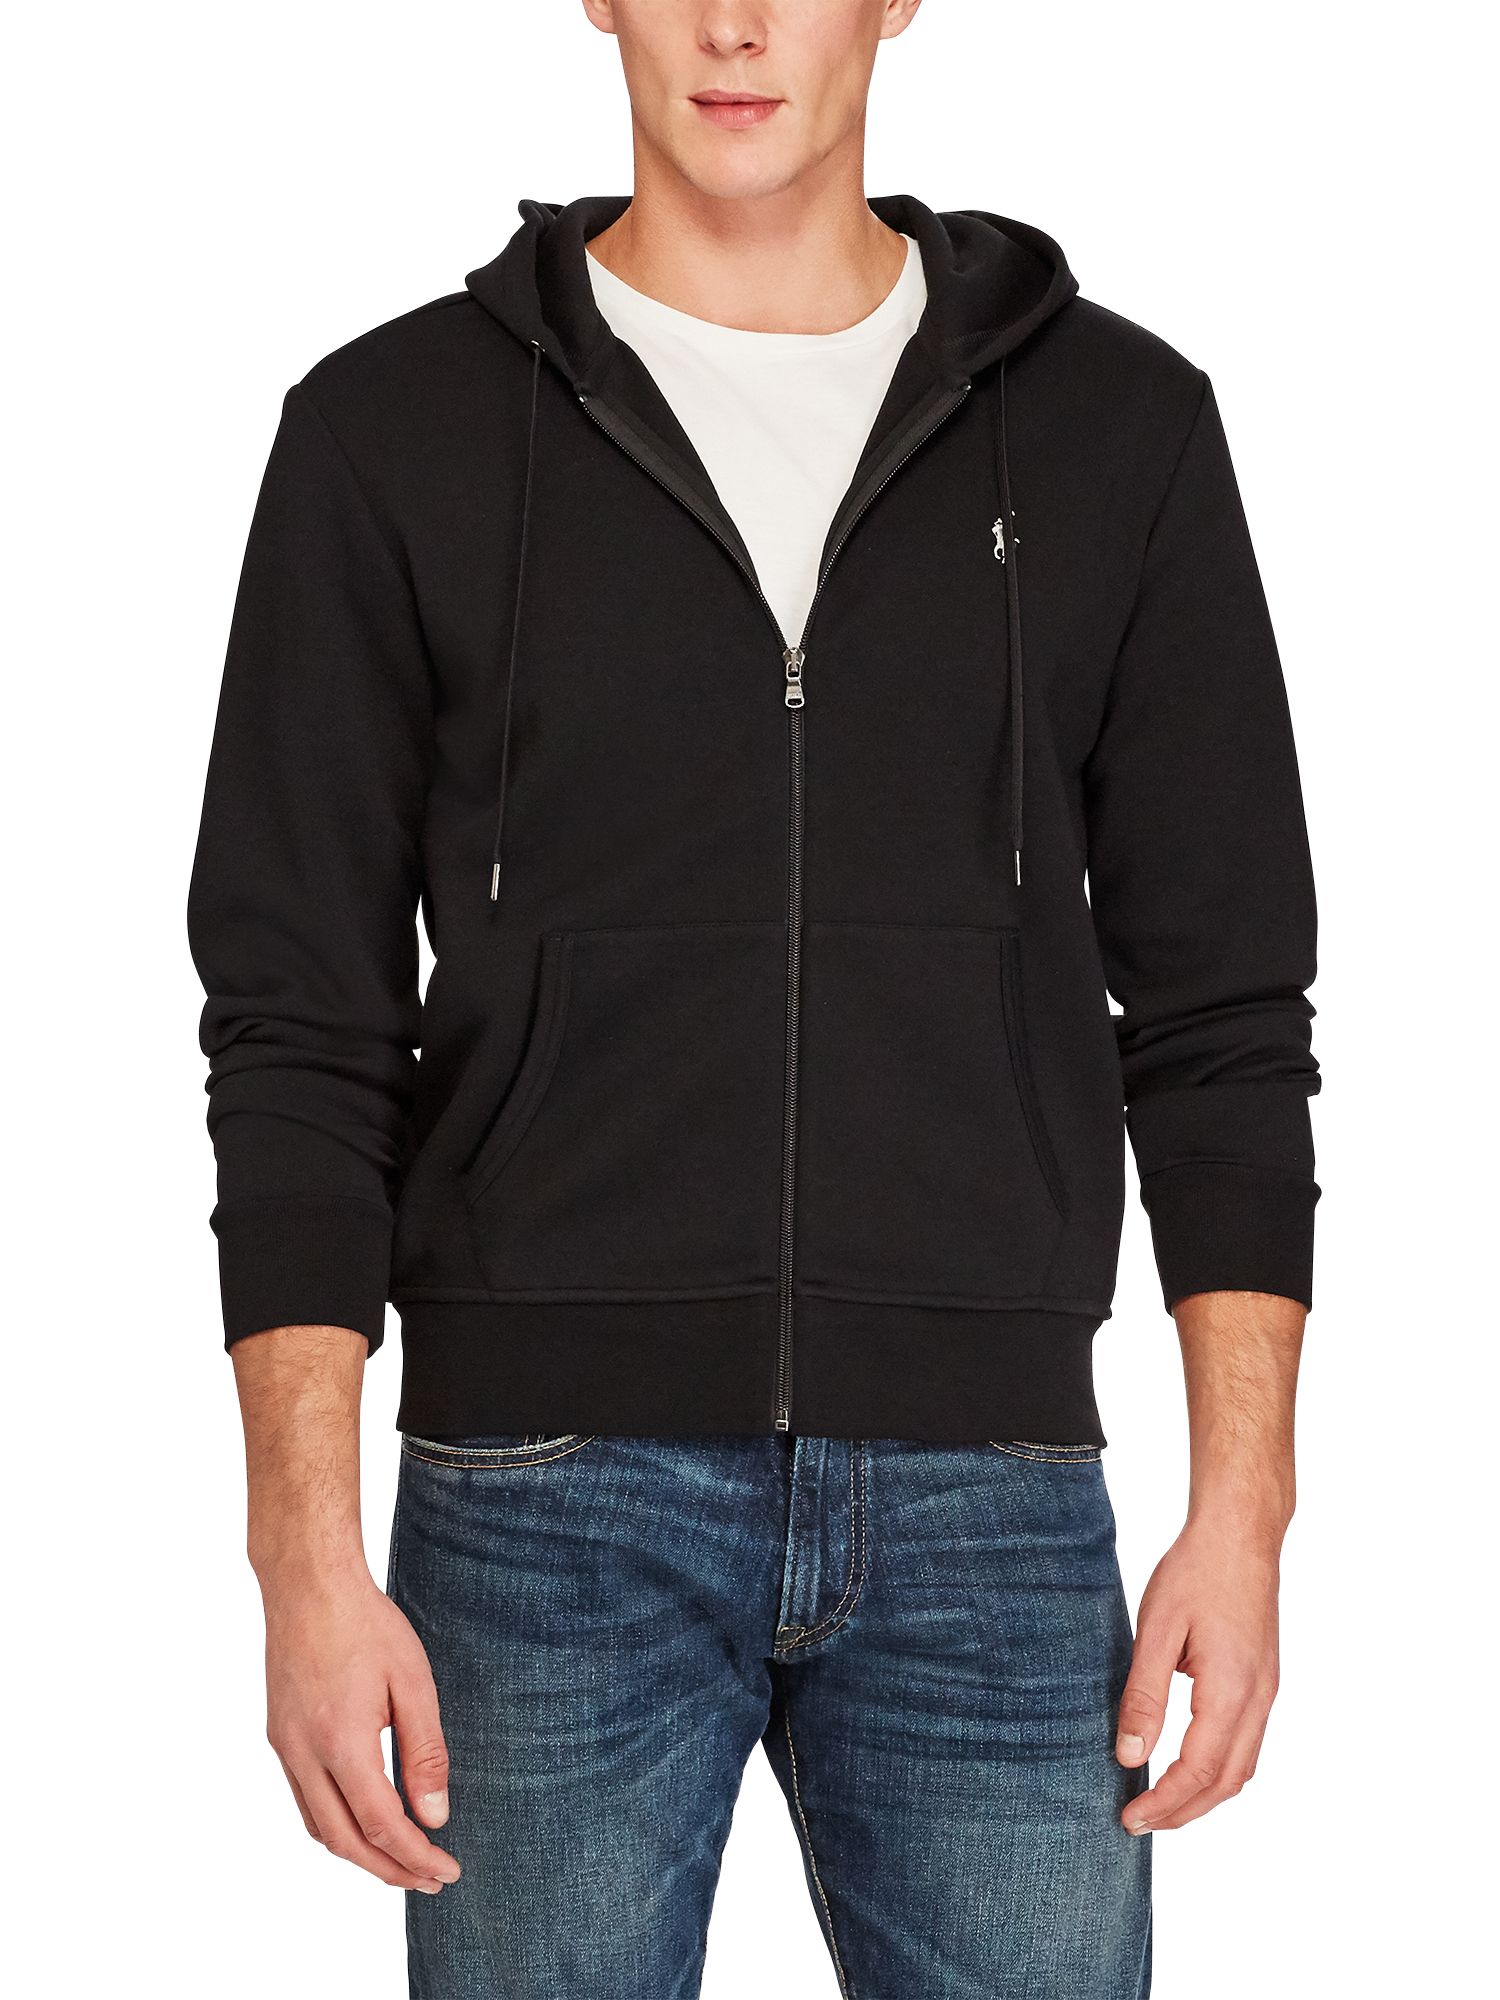 polo ralph lauren black zip hoodie